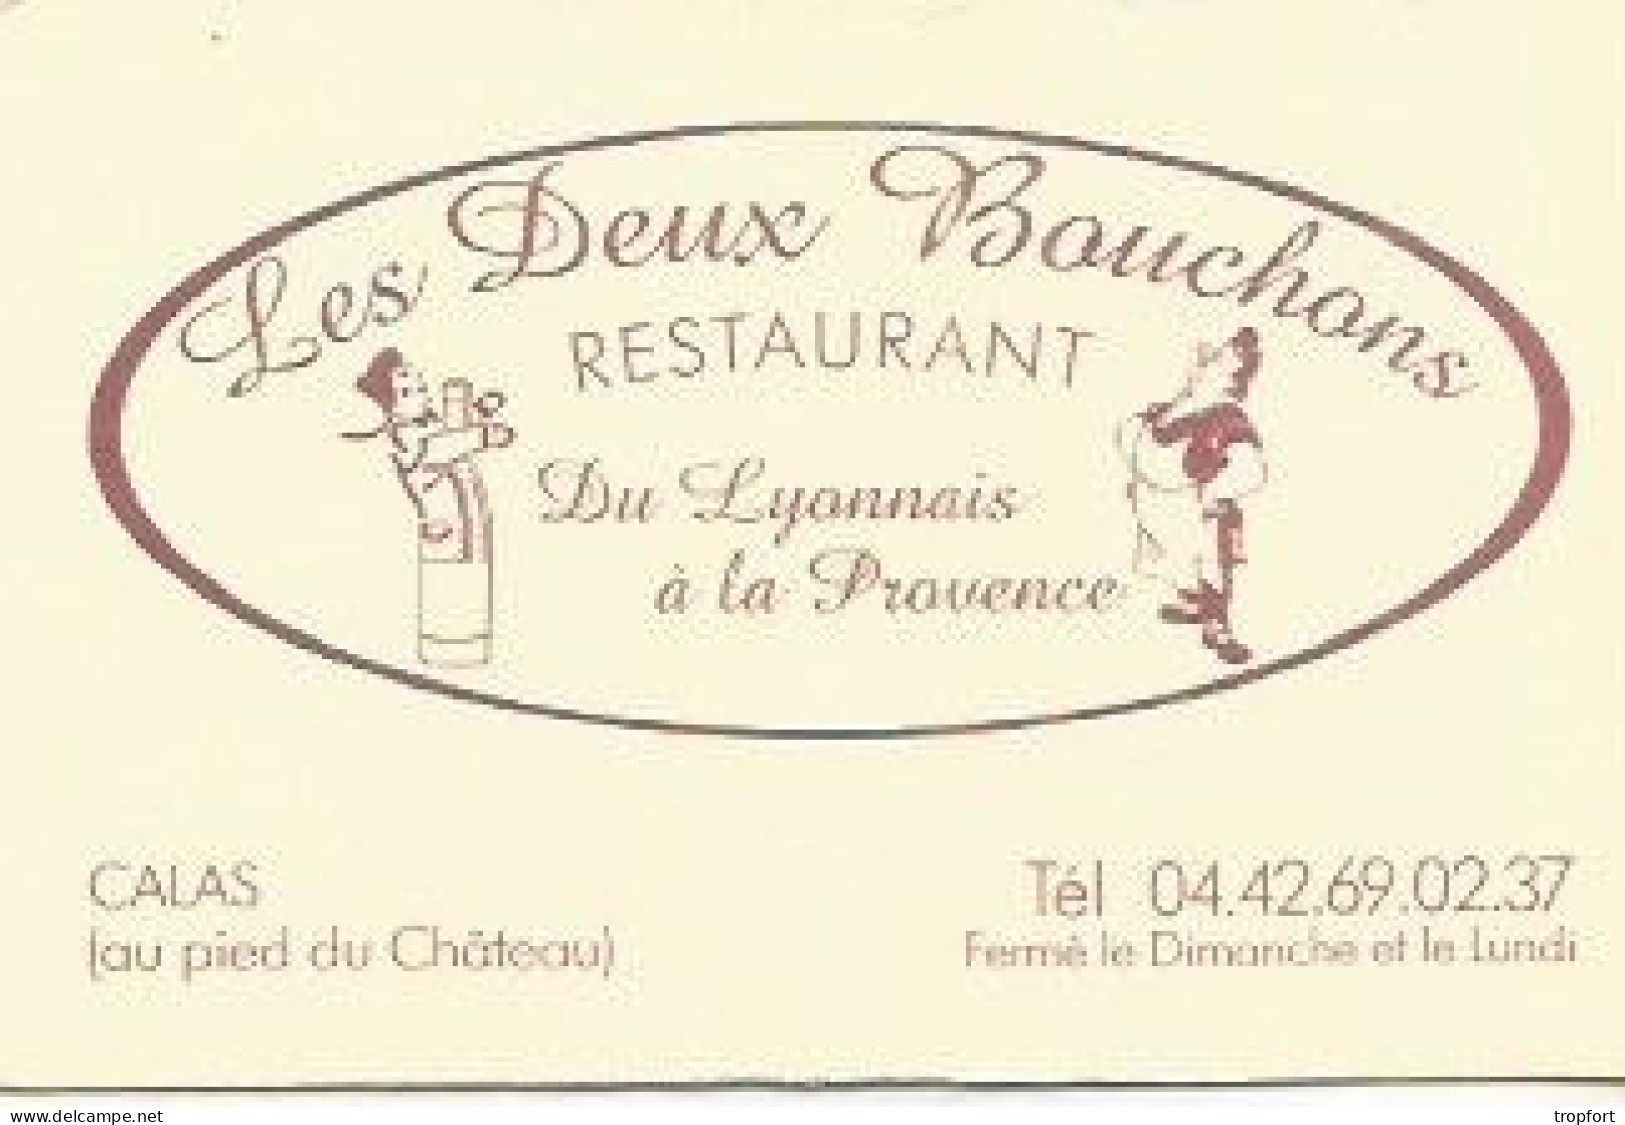 Carte De Visite Restaurant Les Deux Bouchons CALAS GUIGNOL - Visitenkarten